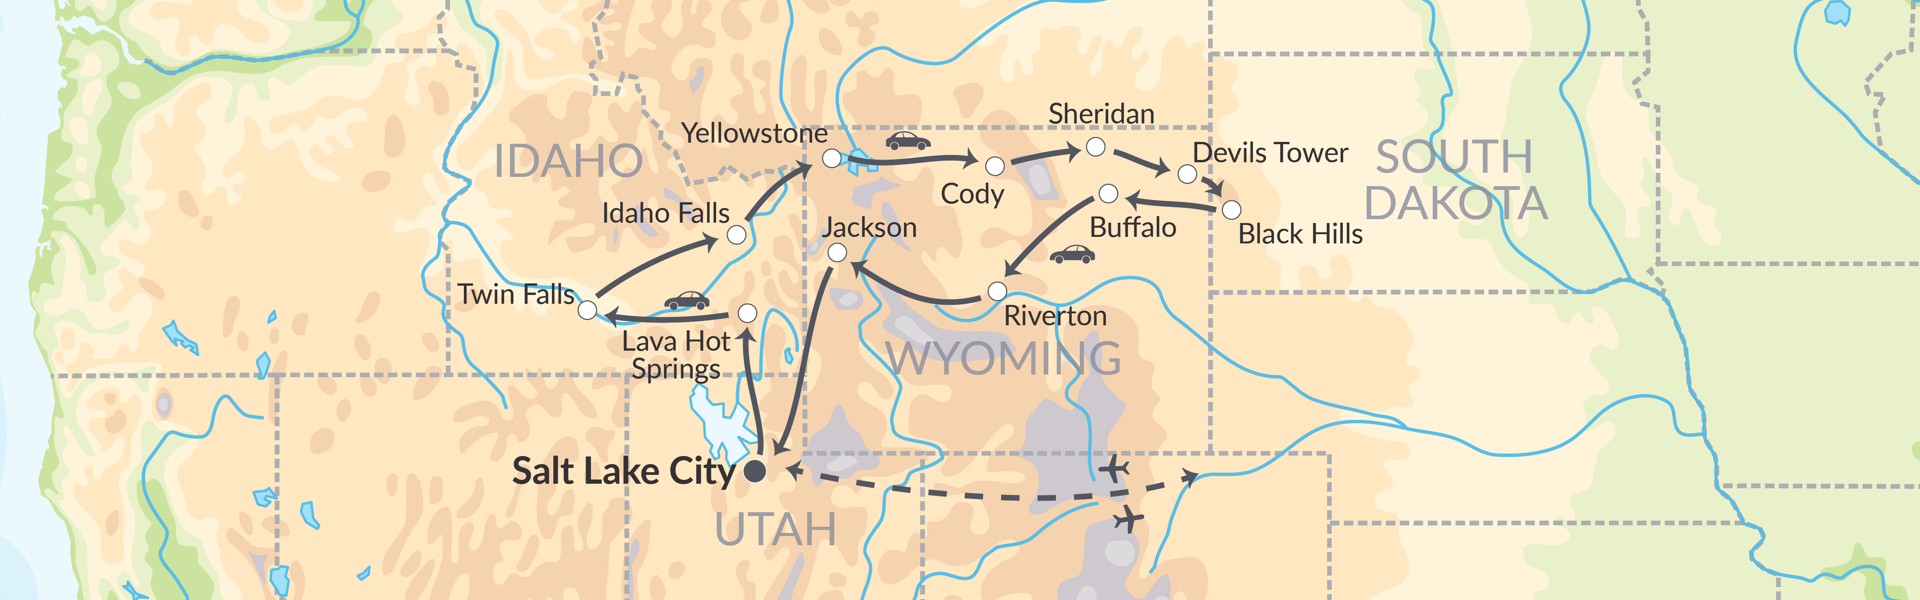 81363 Kom Tæt På 4 Præsidenter, Yellowstone & Buffalo Bill